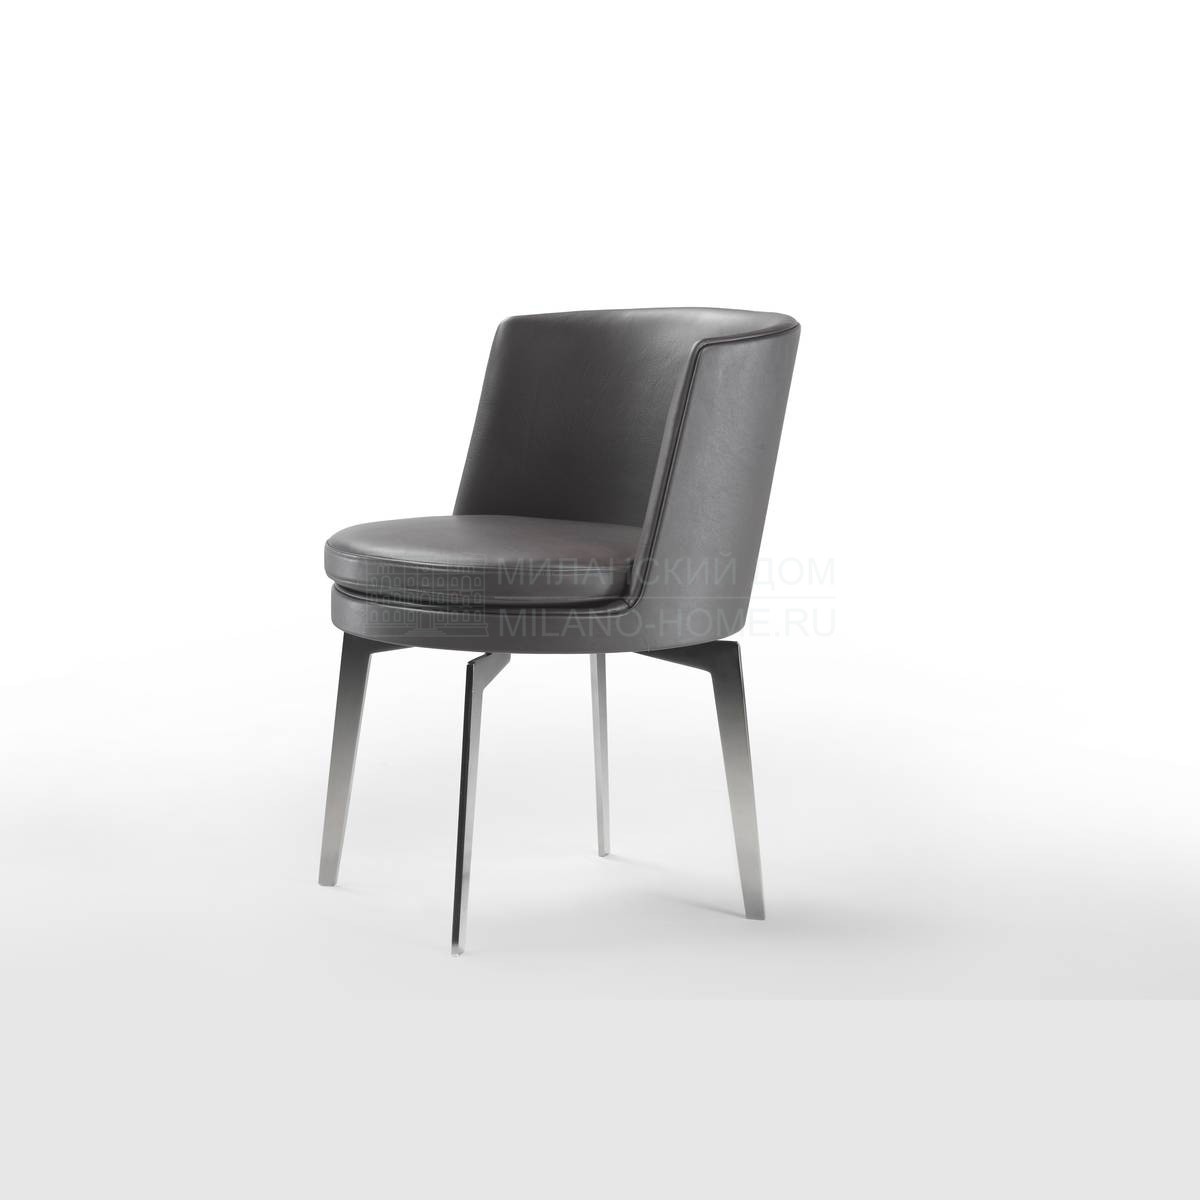 Круглое кресло Feel good/ armchair из Италии фабрики FLEXFORM